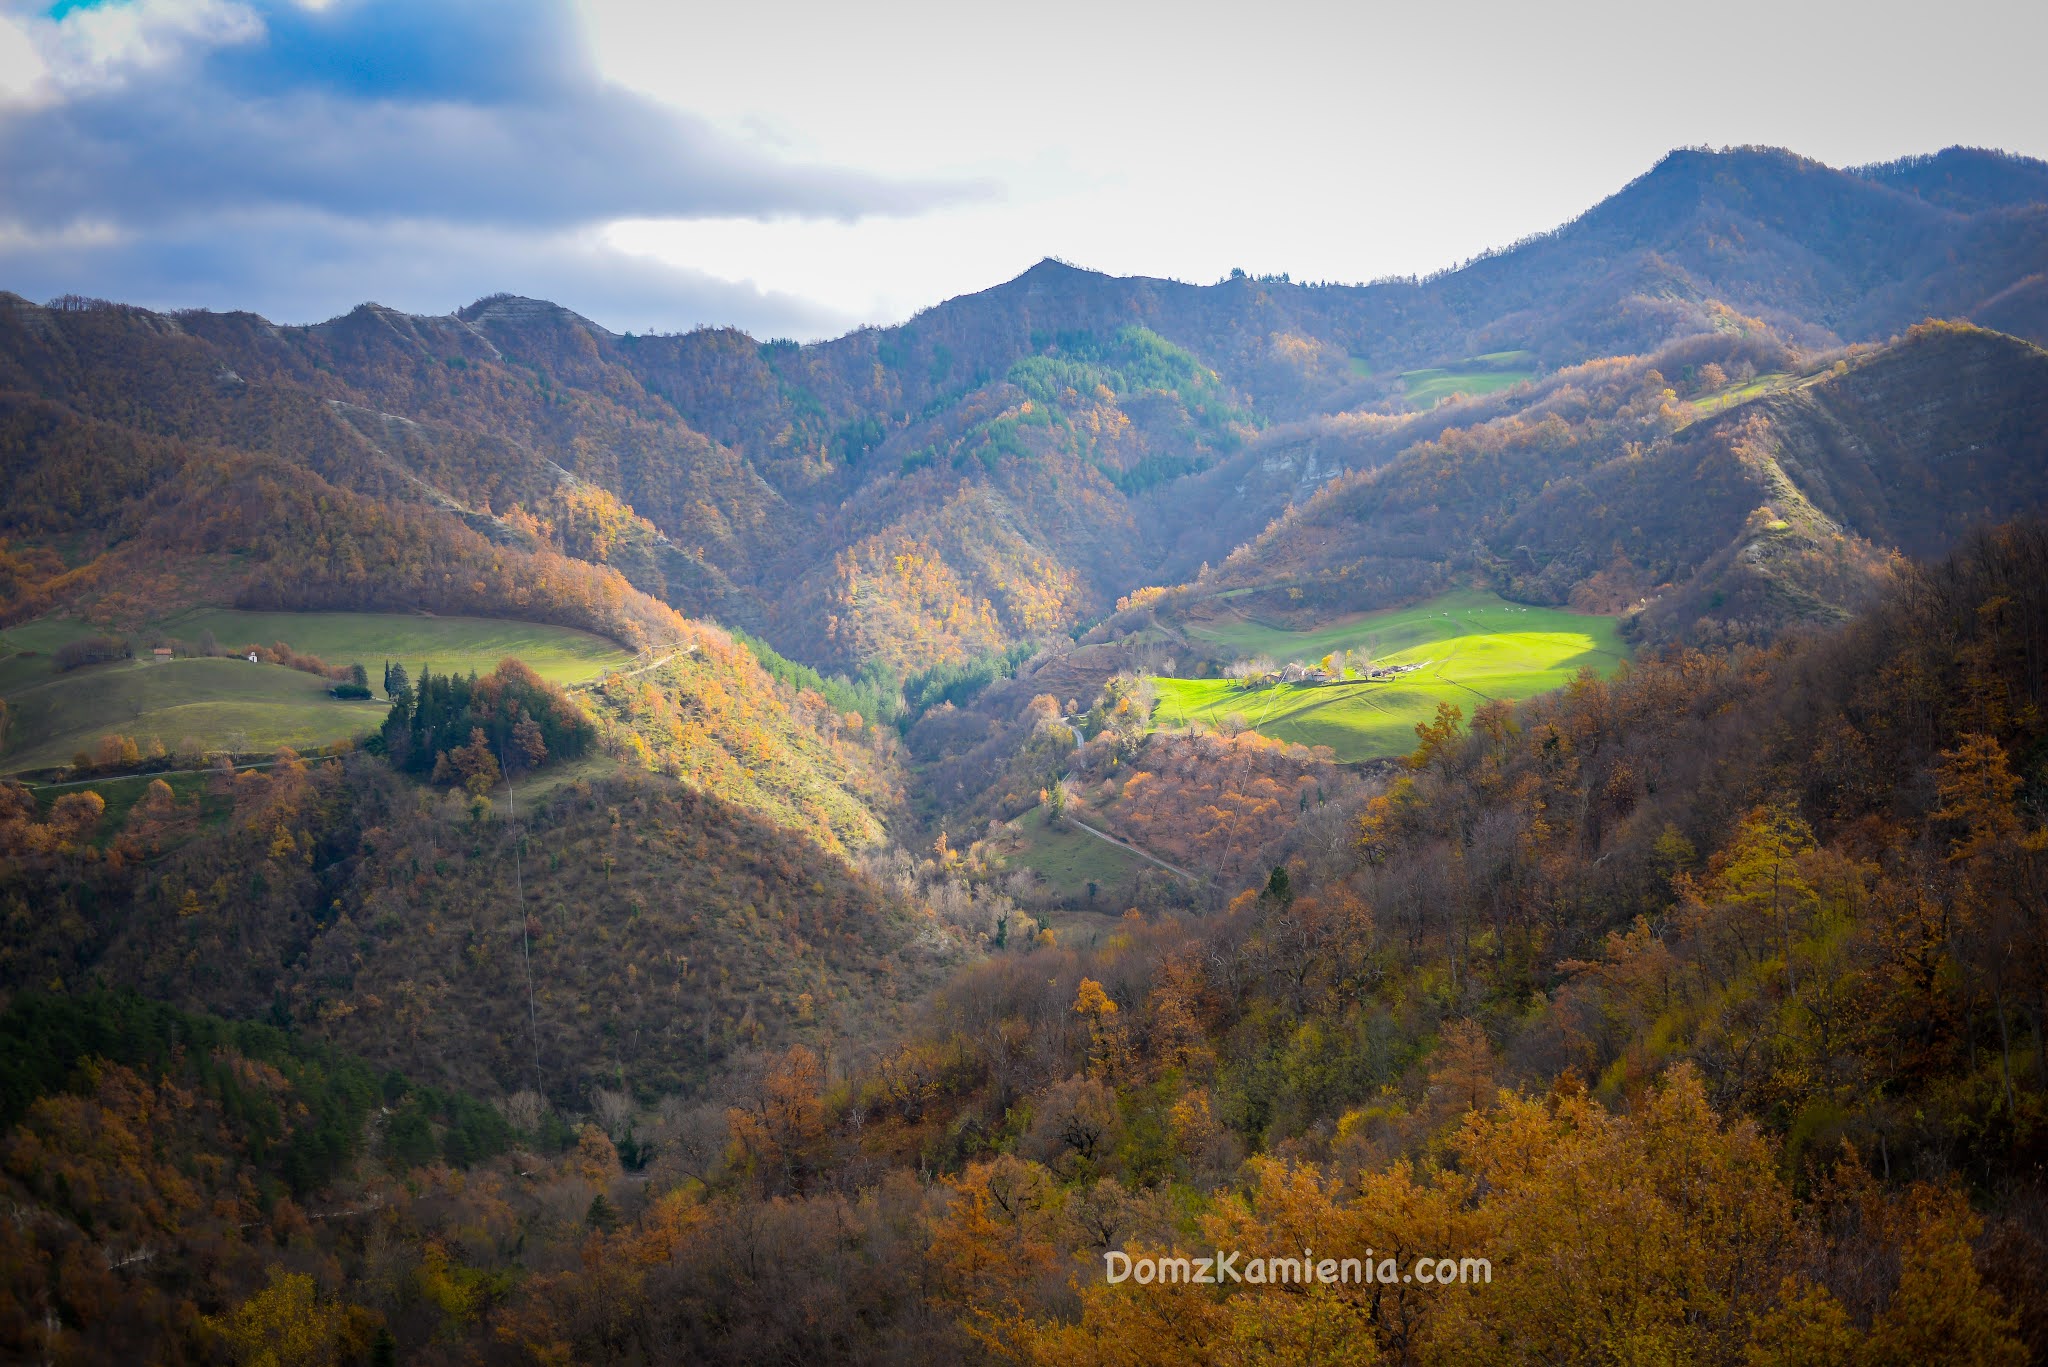 Dom z Kamienia, blog o Toskanii, trekking w Marradi